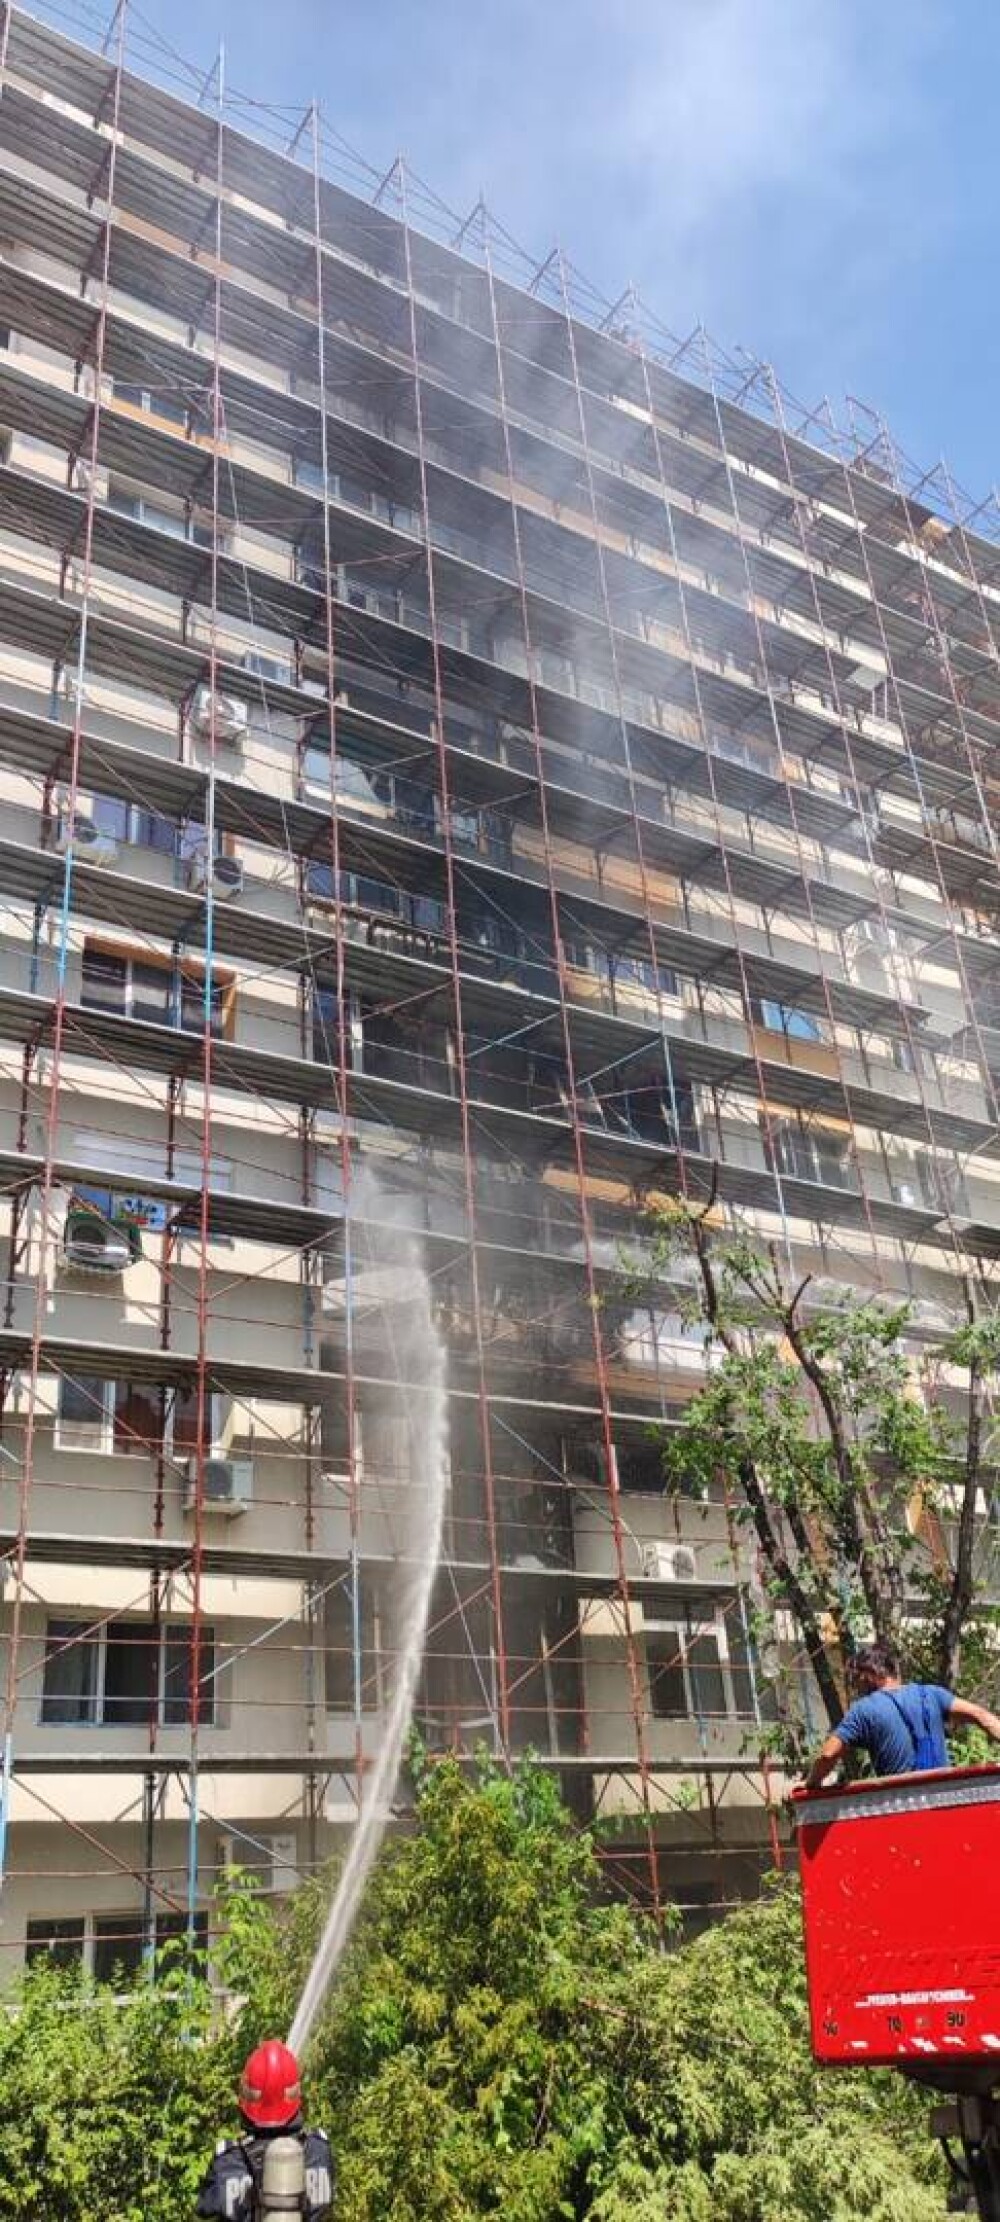 Alertă în Capitală, după ce fațada unui bloc a fost cuprinsă de flăcări - Imaginea 5